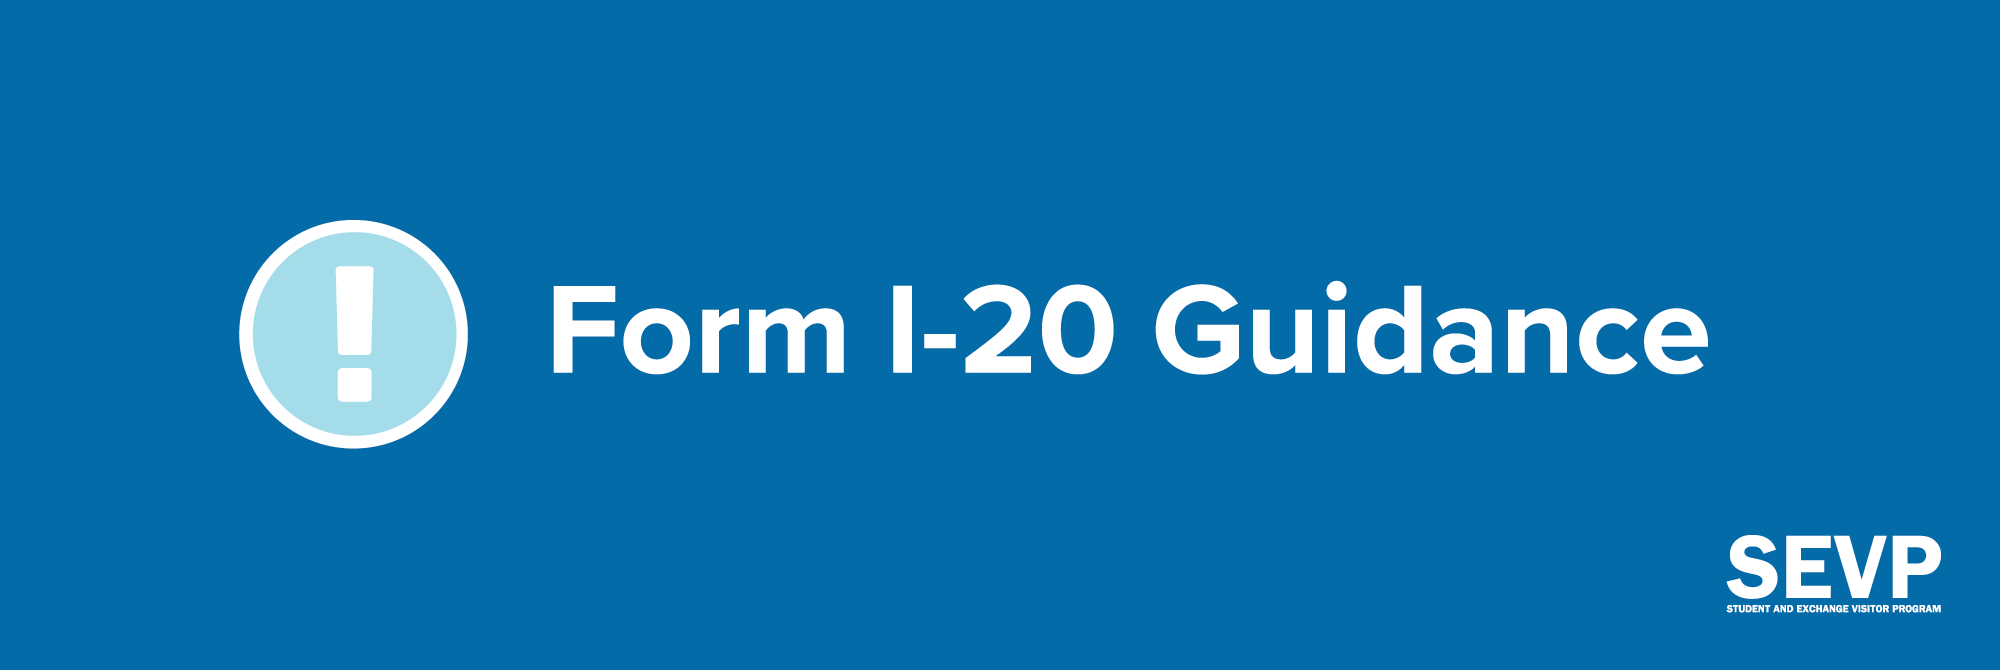 Form I-20 Image